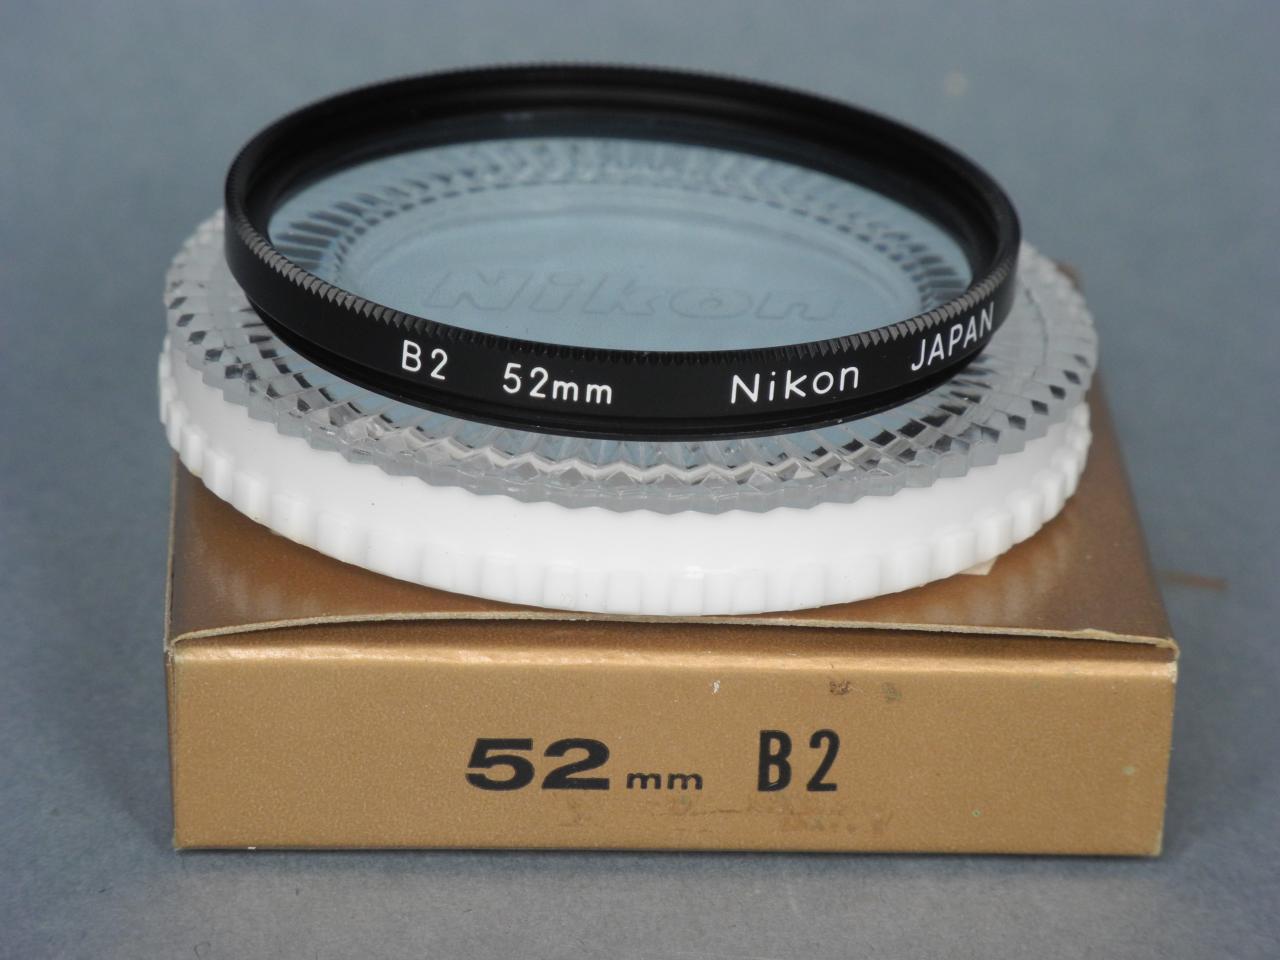 *Nikon filtre coloré B2 52mm*